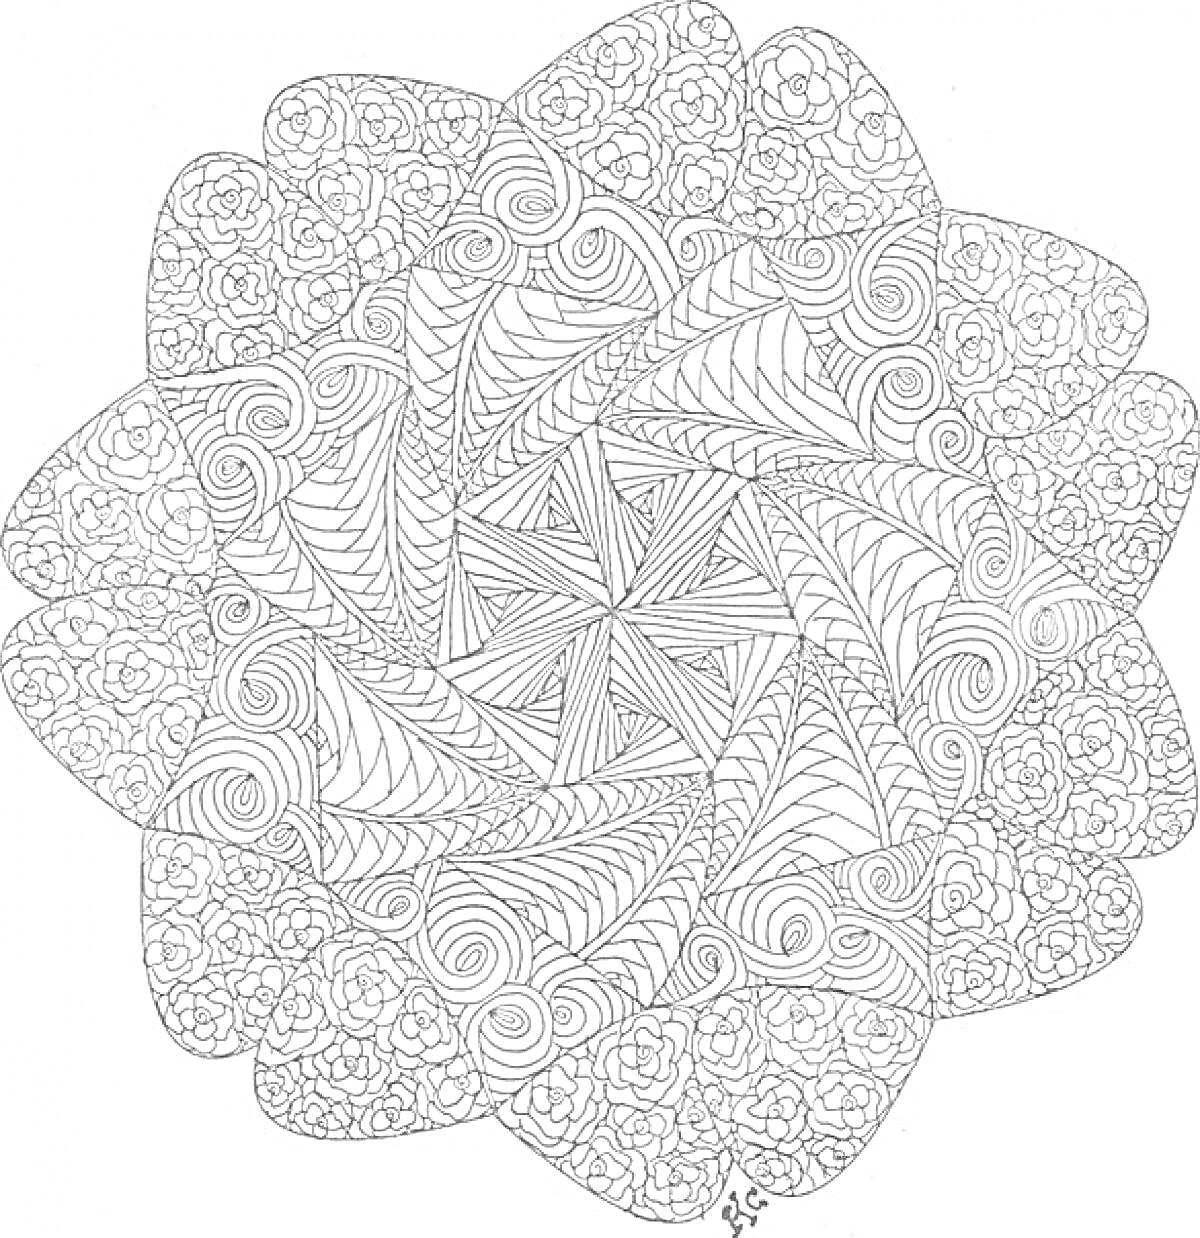 Раскраска Цветочный узор с абстрактными элементами (спирали, линии, узоры)